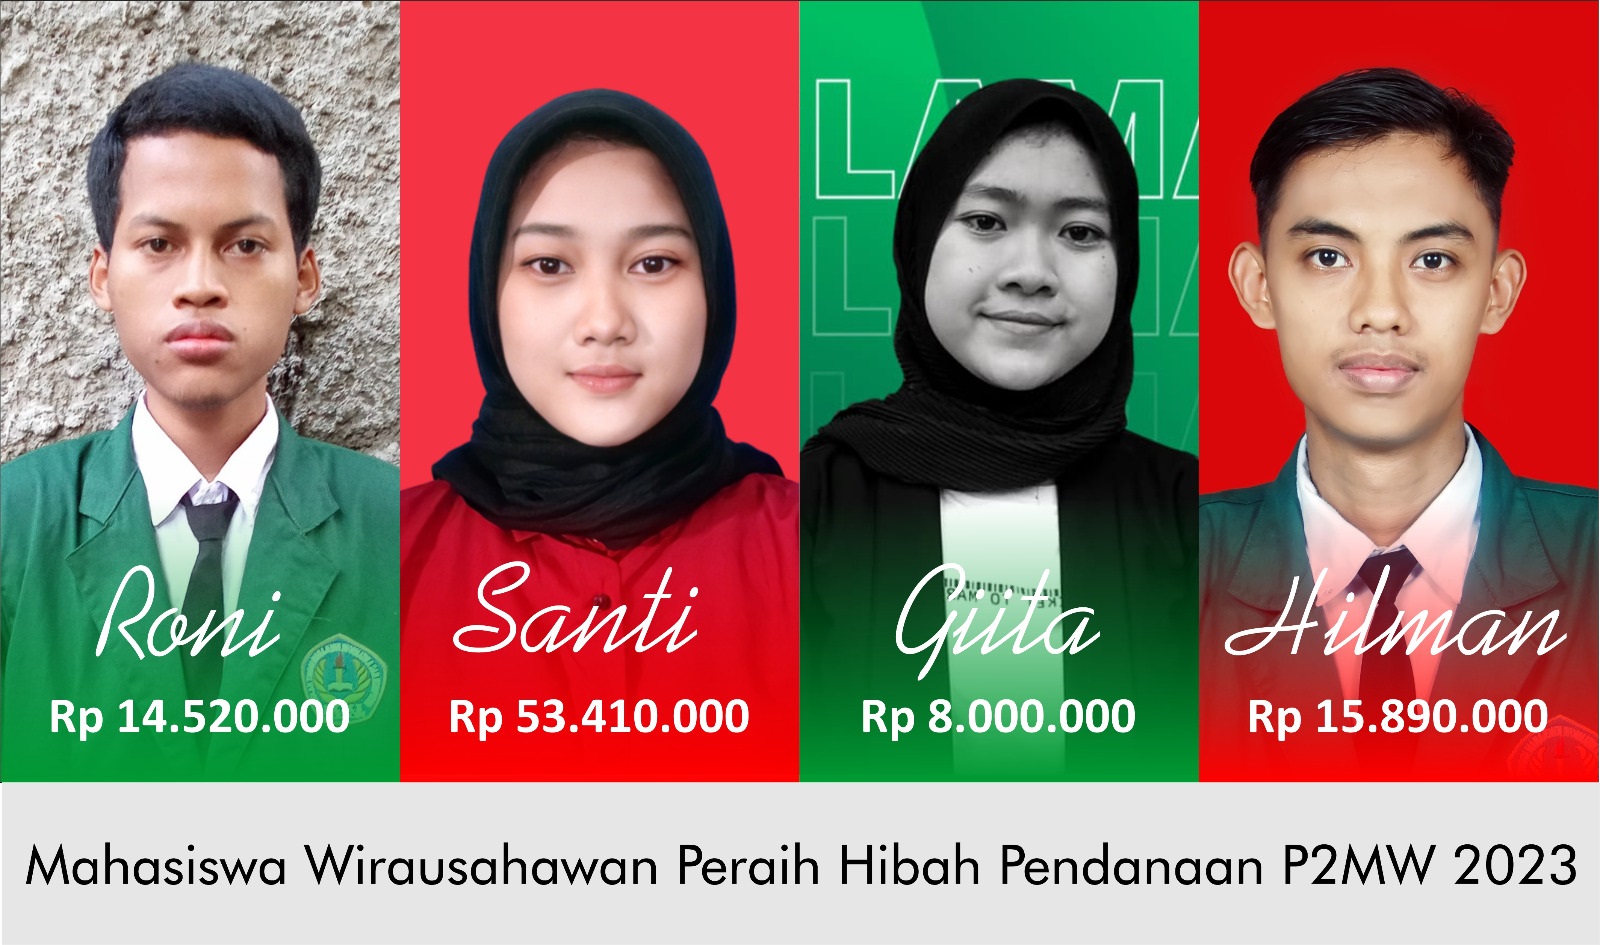 4 Inovasi Usaha Mahasiswa STMIK IKMI Cirebon Sukses Raih Pendanaan P2MW